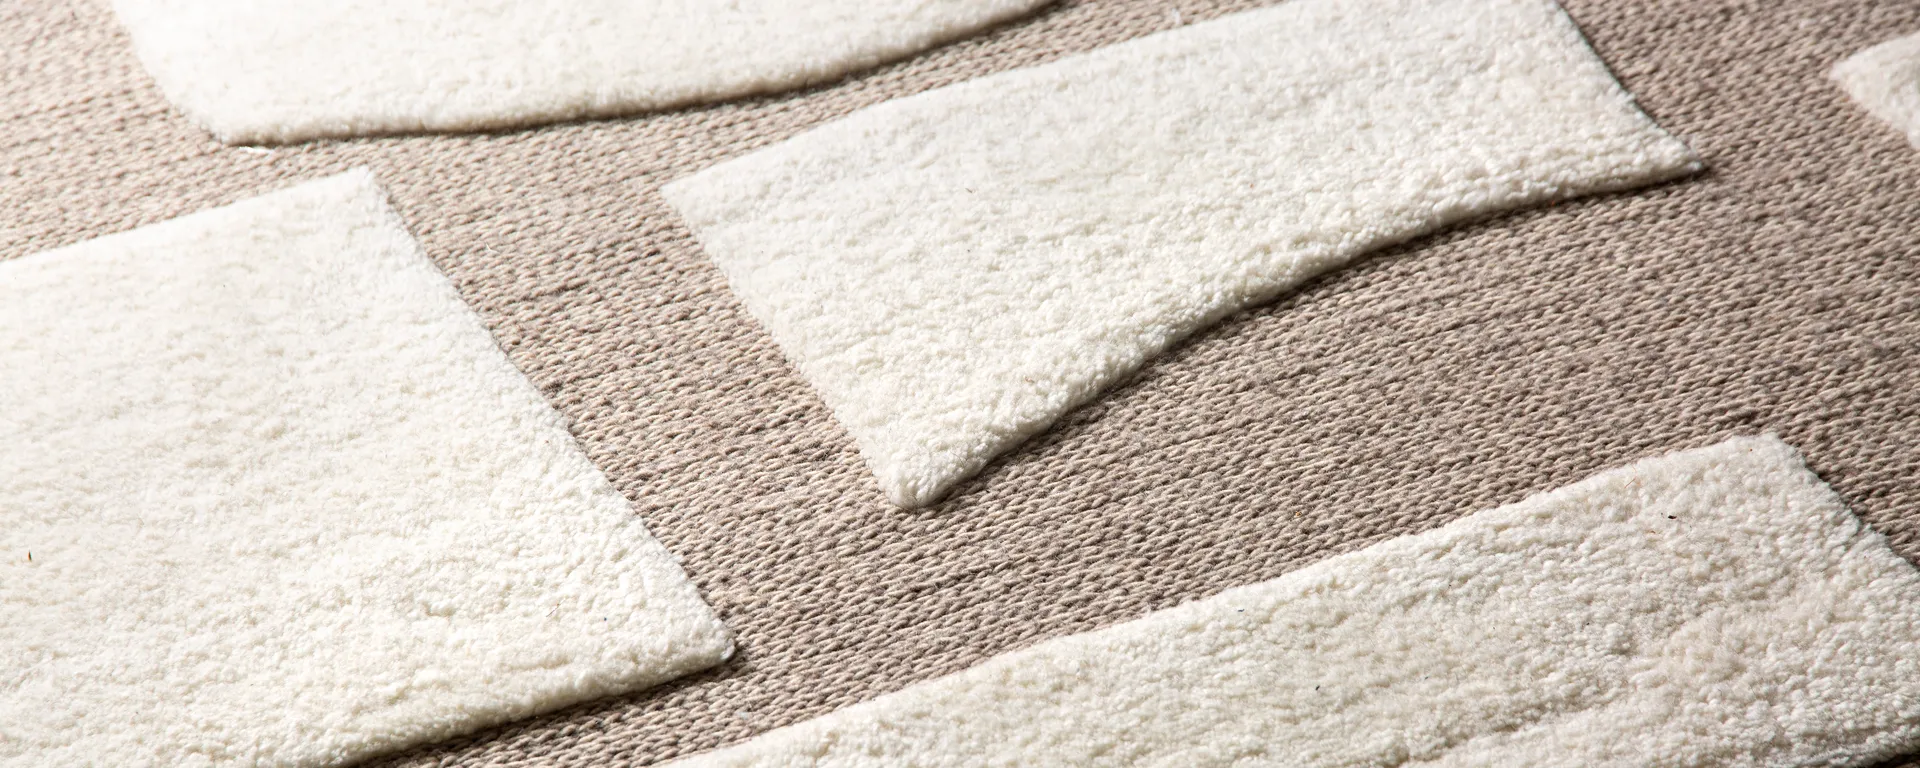 Tapis d'hiver : comment bien choisir son tapis pour un intérieur cosy et tendance ?